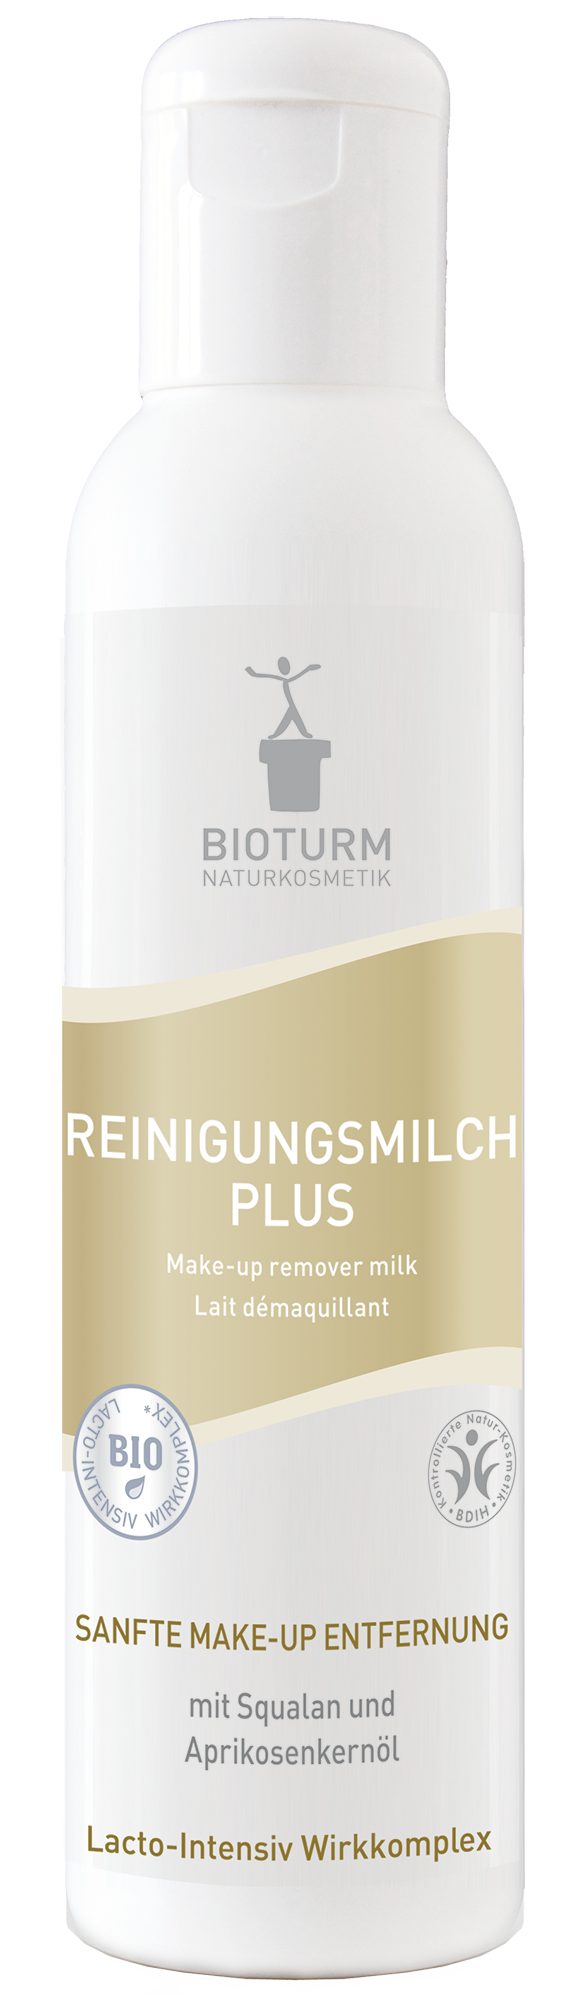 Bioturm Gesichts-Reinigungsmilch Bioturm Naturkosmetik Очищаюче молочко Plus 150 ml